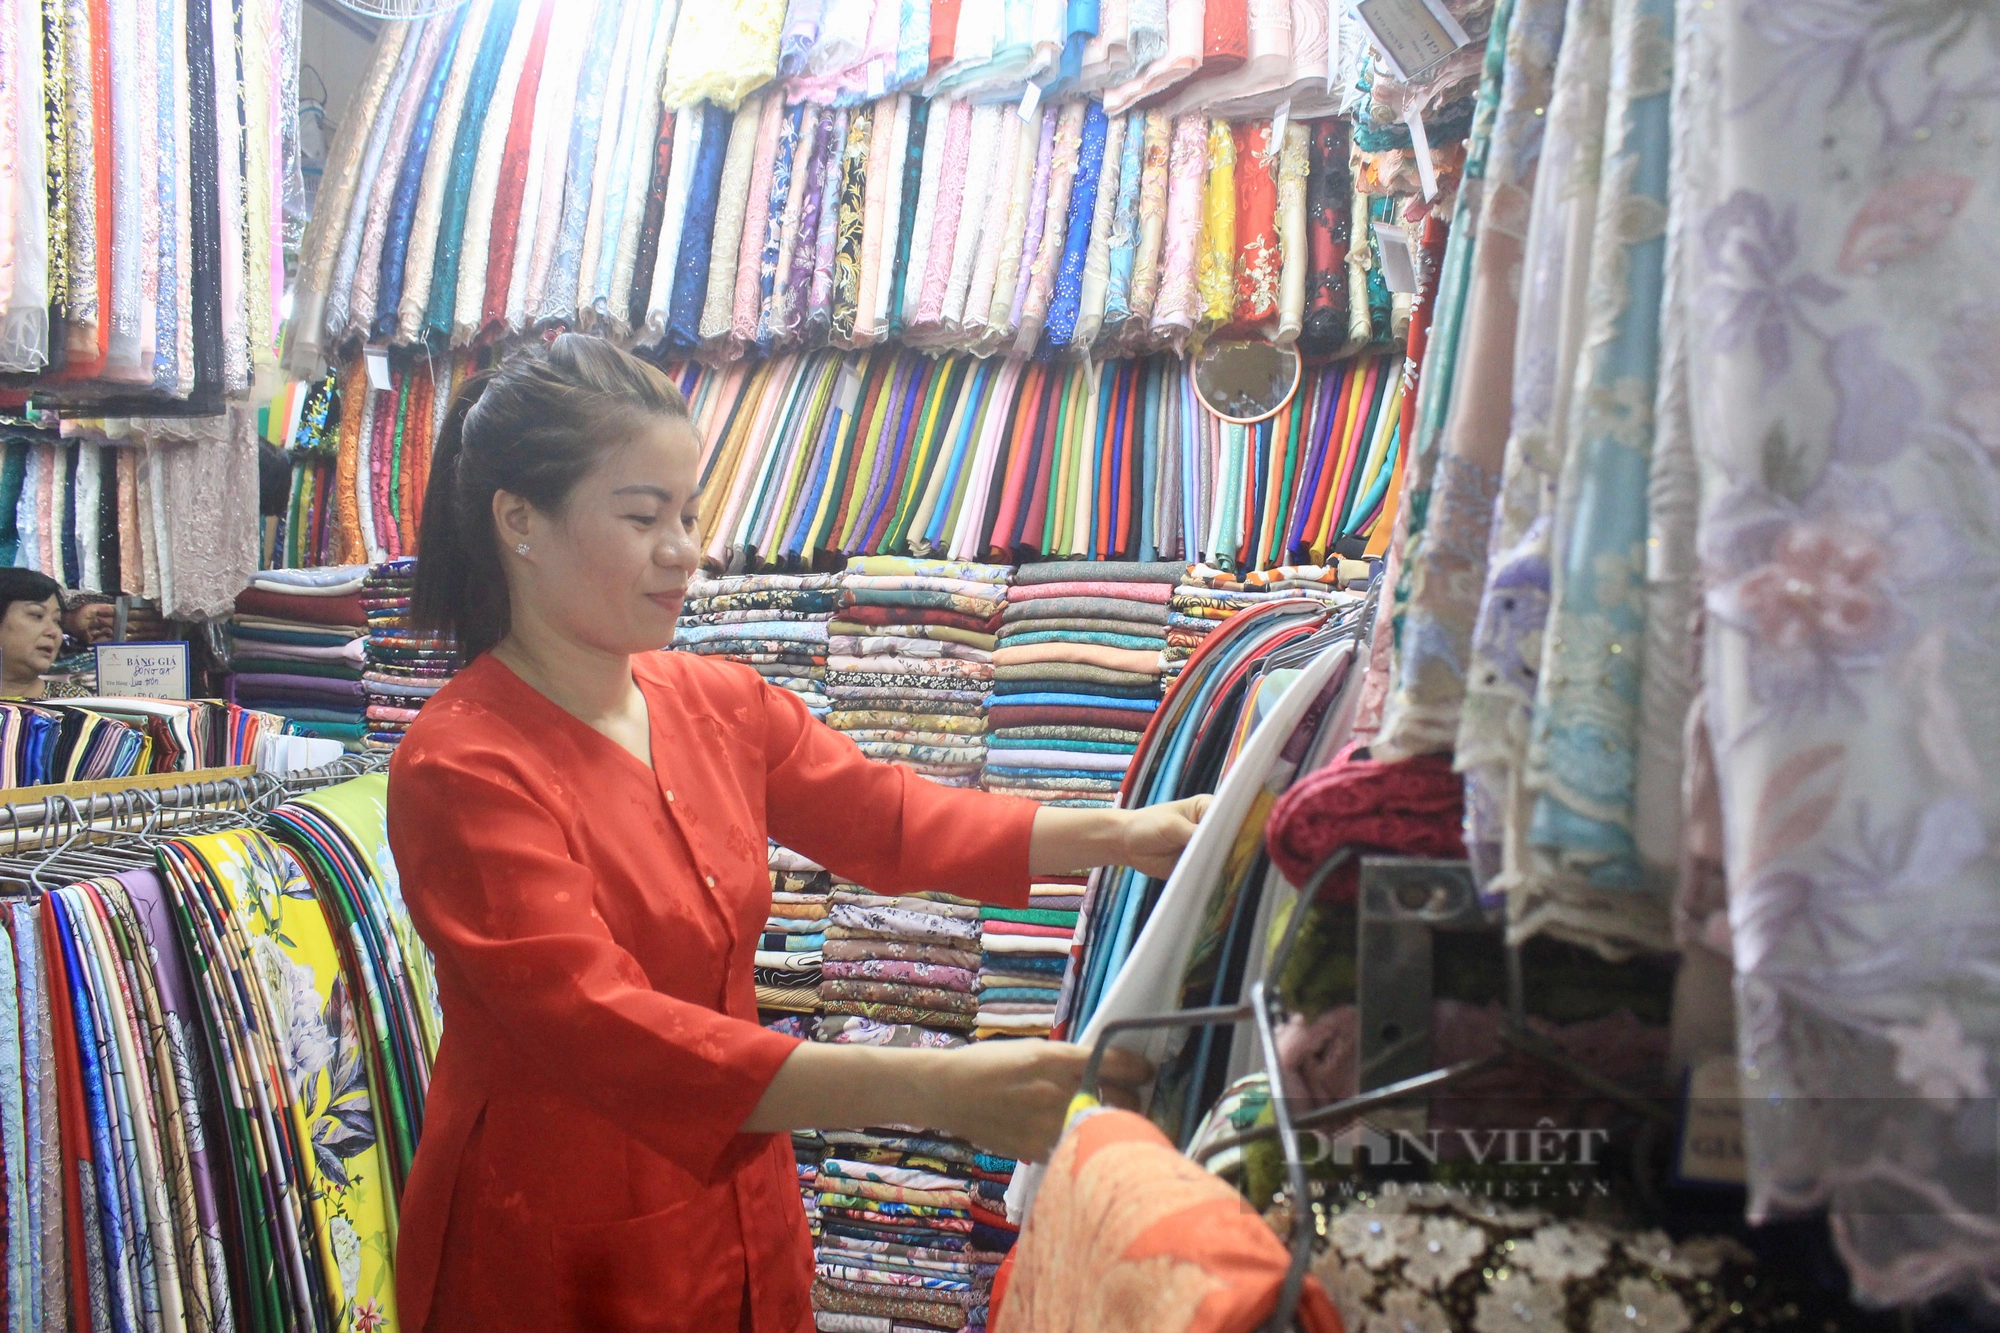 Tiểu thương chợ Bến Thành mặc áo bà ba xinh xắn, không nói thách, còn giảm giá thêm để hút khách - Ảnh 2.